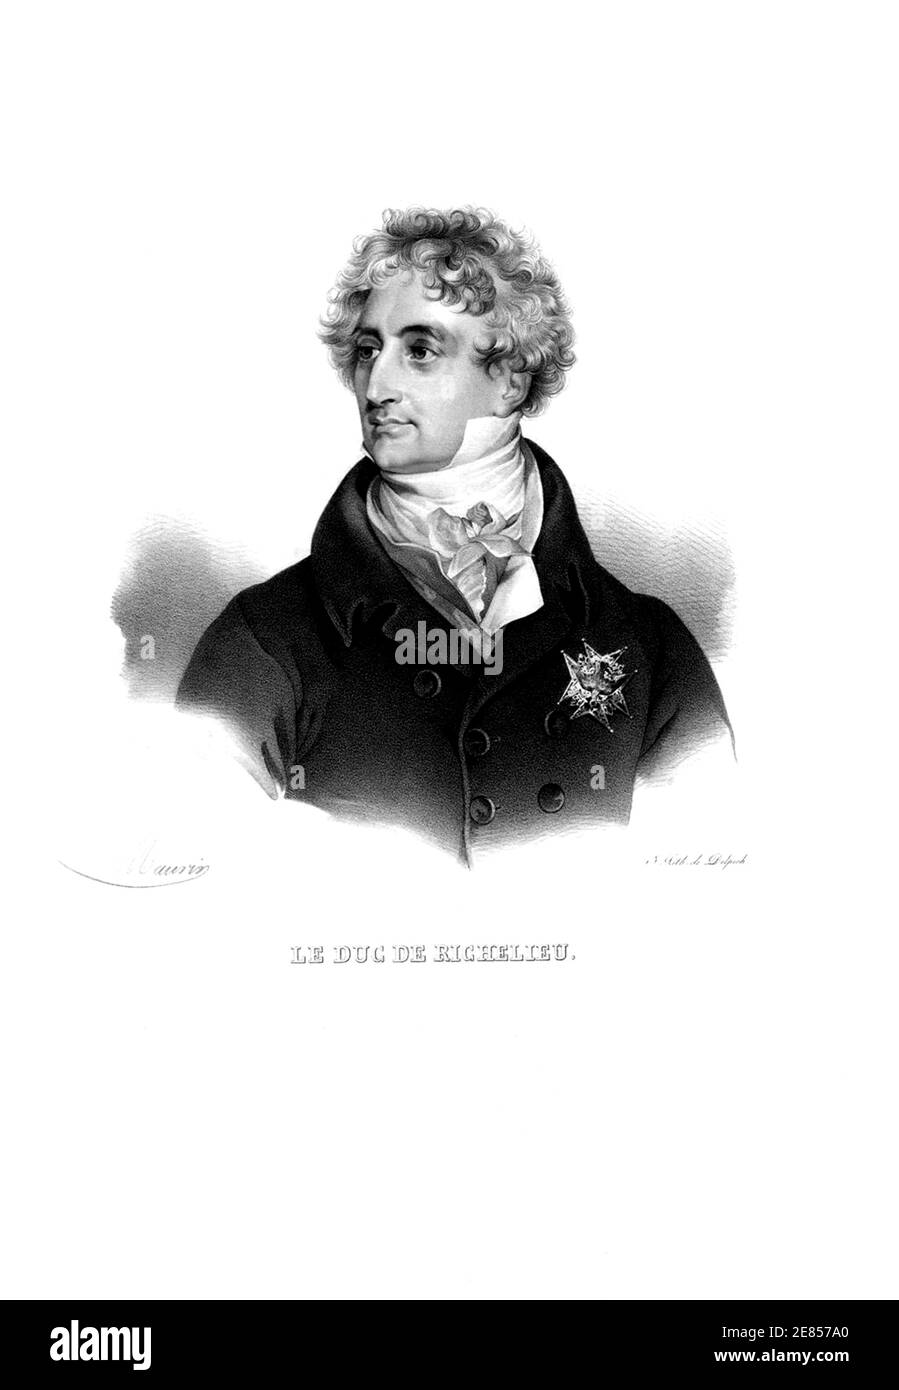 1820 C, FRANCIA: Il politico francese Armand Emmanuel De Vignerot du Plessis DUC DE RICHELIEU ( 1766 - 1822 ), primo ministro ai tempi del re Luigi XVII . Inciso da Delpech , dal disegno originale di Maurin .- Duca di - Duca - NOBILTÀ - NOBILI francesi - Nobiltà francese - FRANCIA - illustrazione - illustrazione - incisione - colletto - colletto - POLITICO - POLITICA - POLITICA --- ARCHIVIO GBB Foto Stock